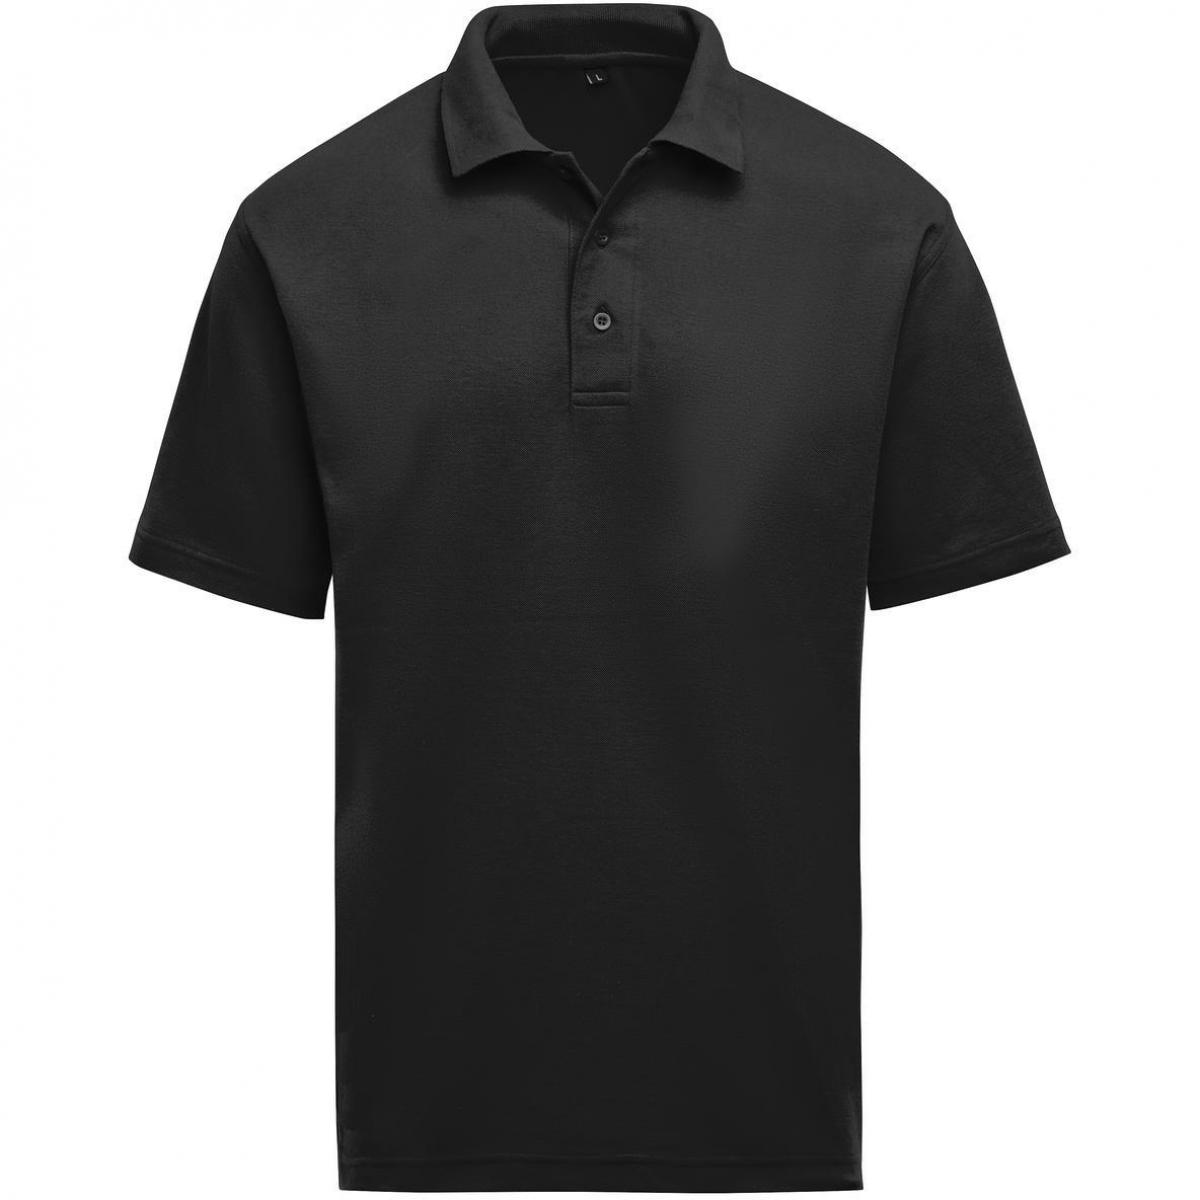 Hersteller: SG Herstellernummer: SGE501 Artikelbezeichnung: Unisex Poloshirt - Workwear - 60°C waschbar Farbe: Black